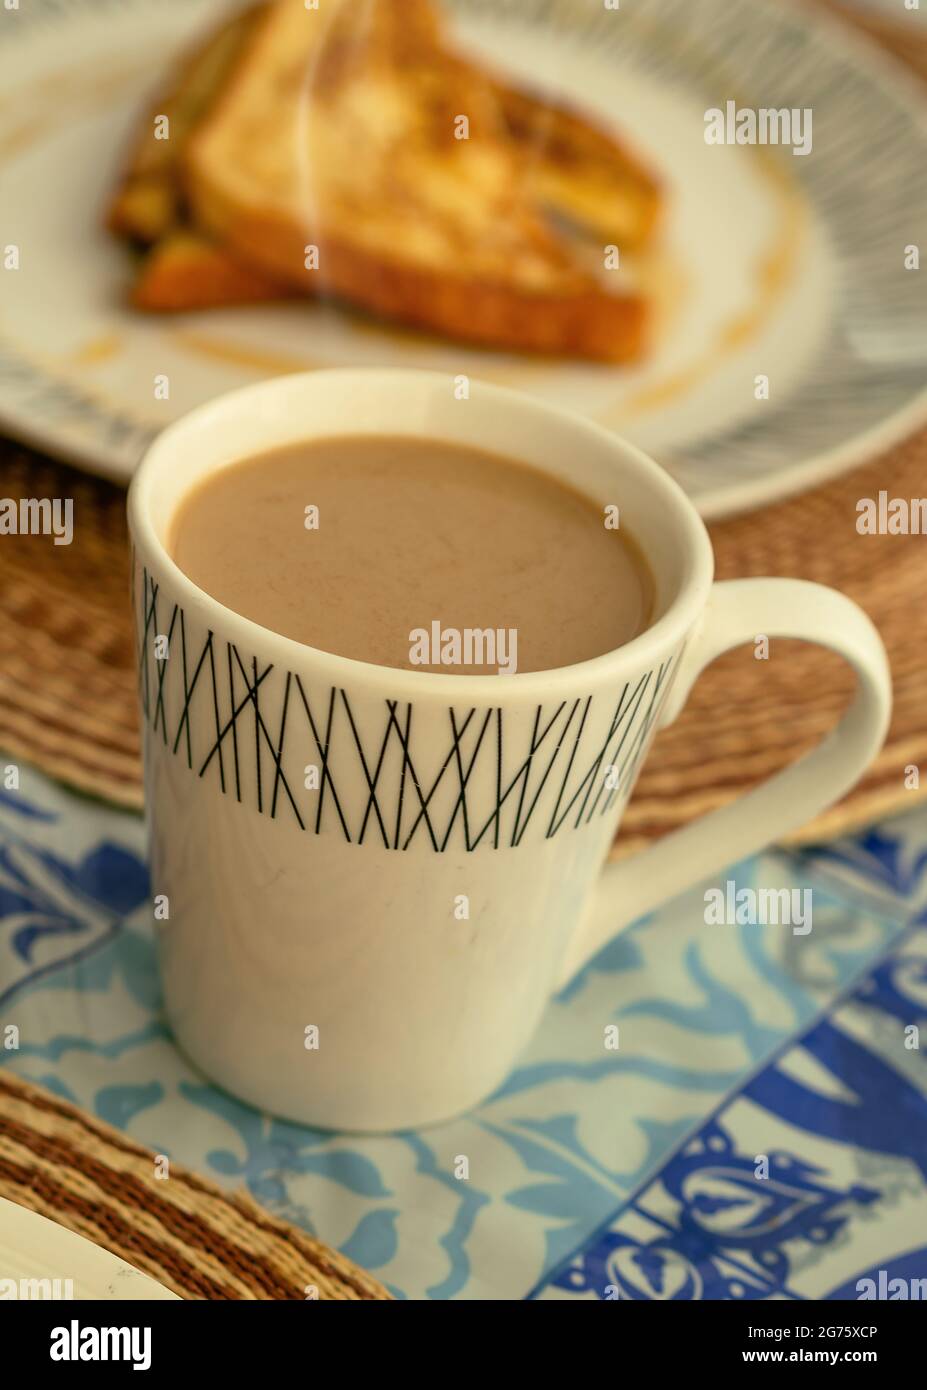 Eine weiße Tasse dampfenden Kaffee Latte, begleitet von französischem Toast zum Frühstück oder Brunch Stockfoto